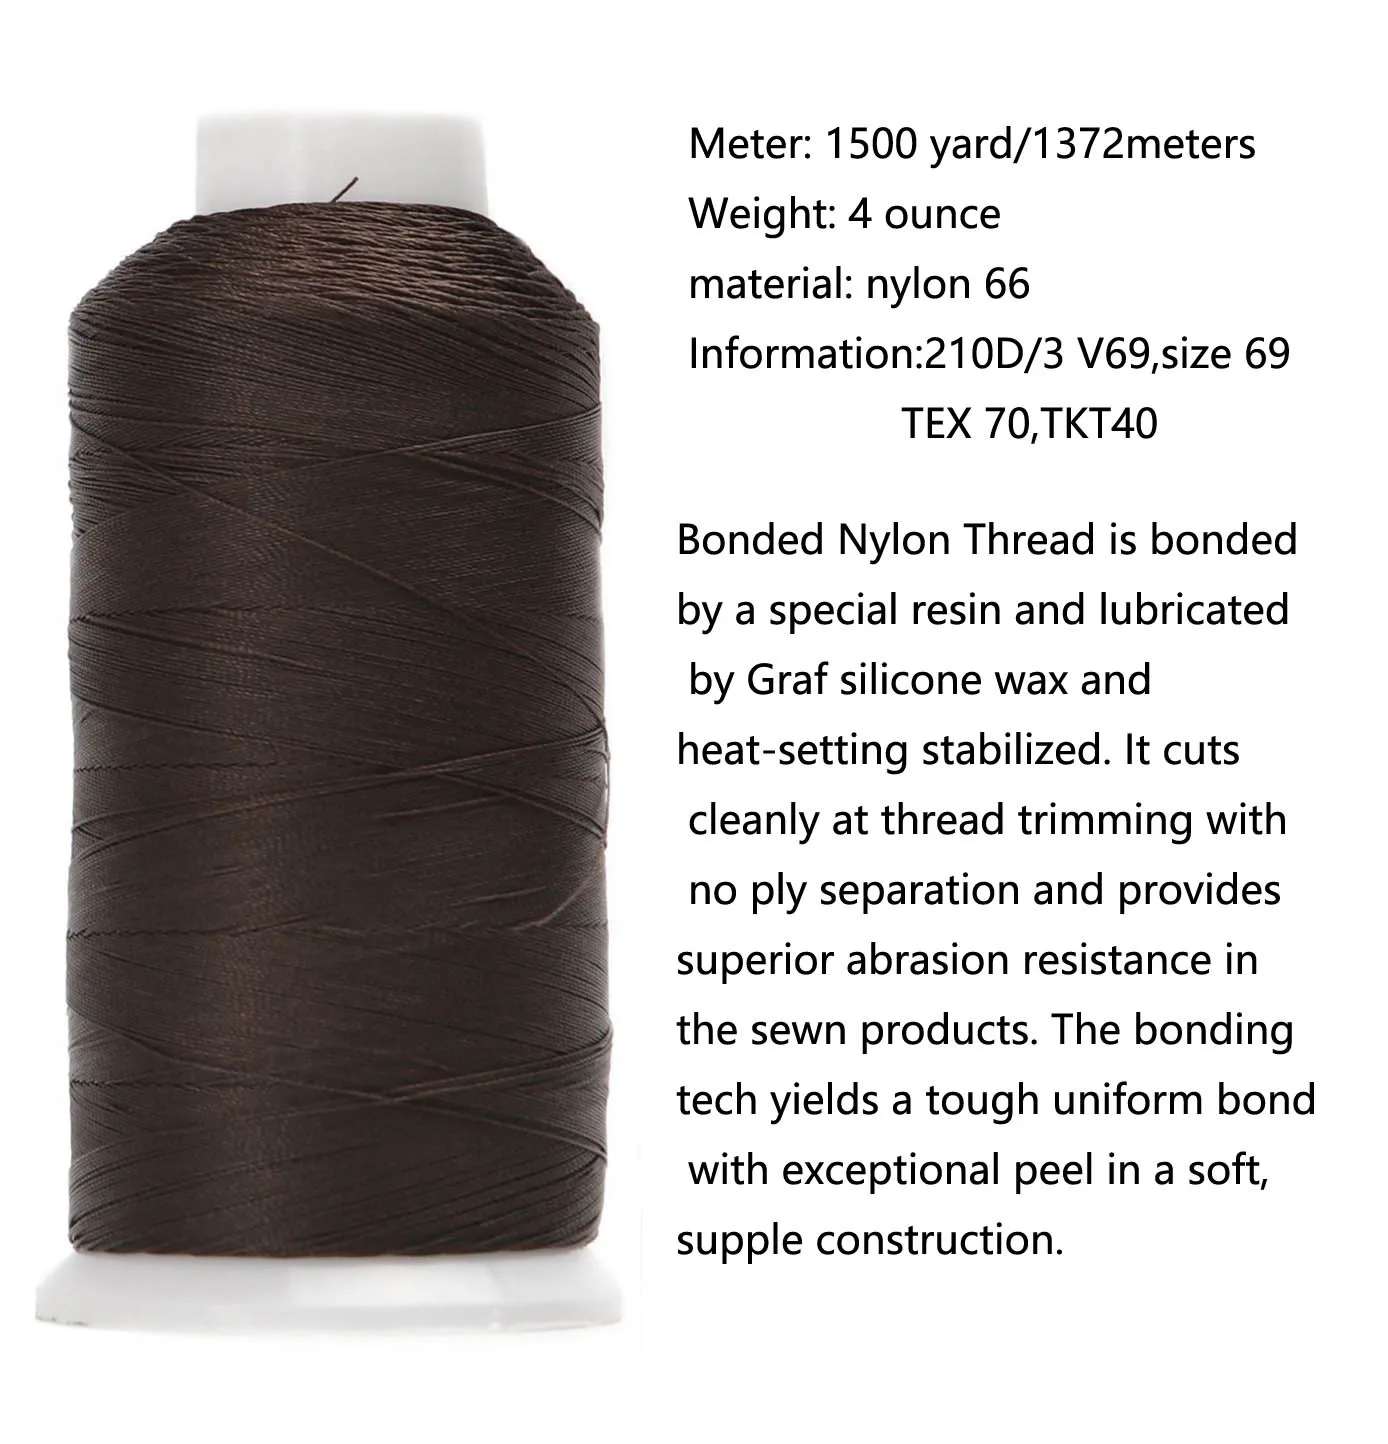 Black) Marine Bonded Nylon Thread, V 69 Weight. (100% Nylon)